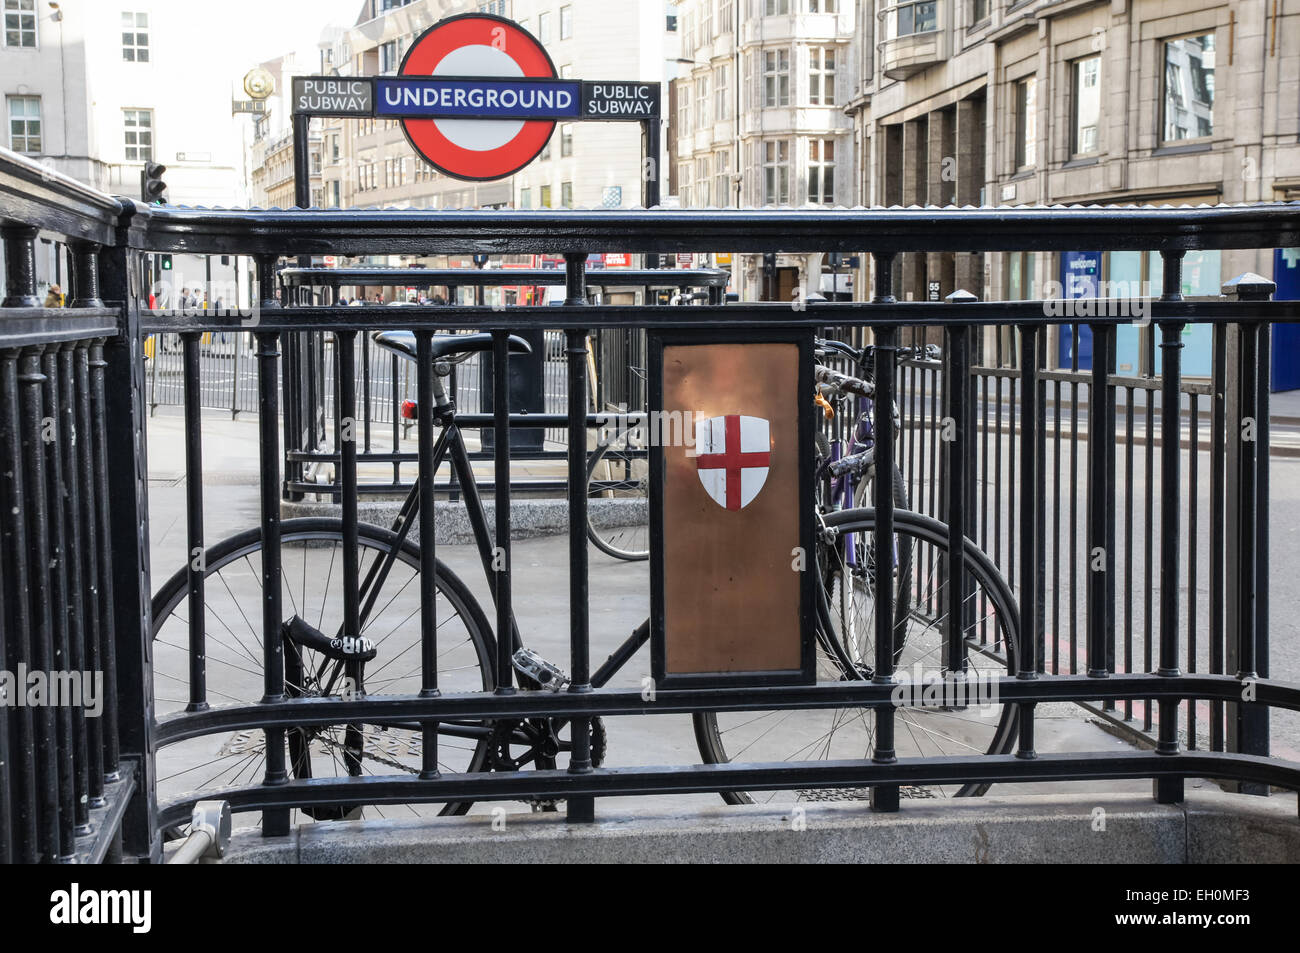 Entrée de la station de métro Monument, Londres Angleterre Royaume-Uni UK Banque D'Images